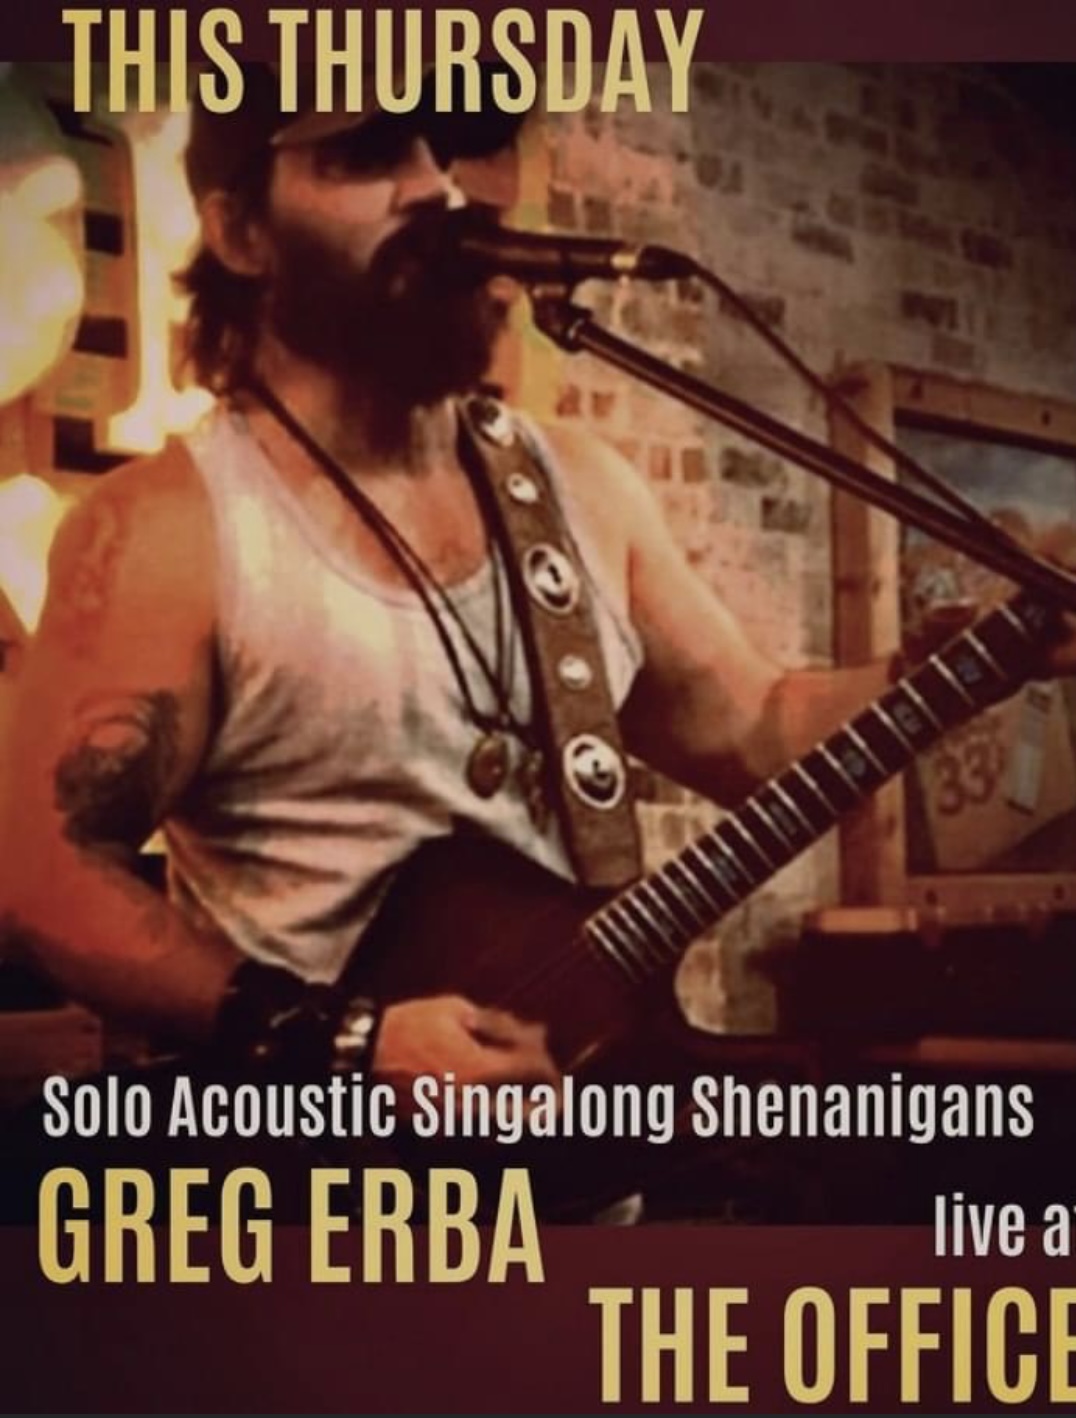 Greg zebra Acoustic Singalong